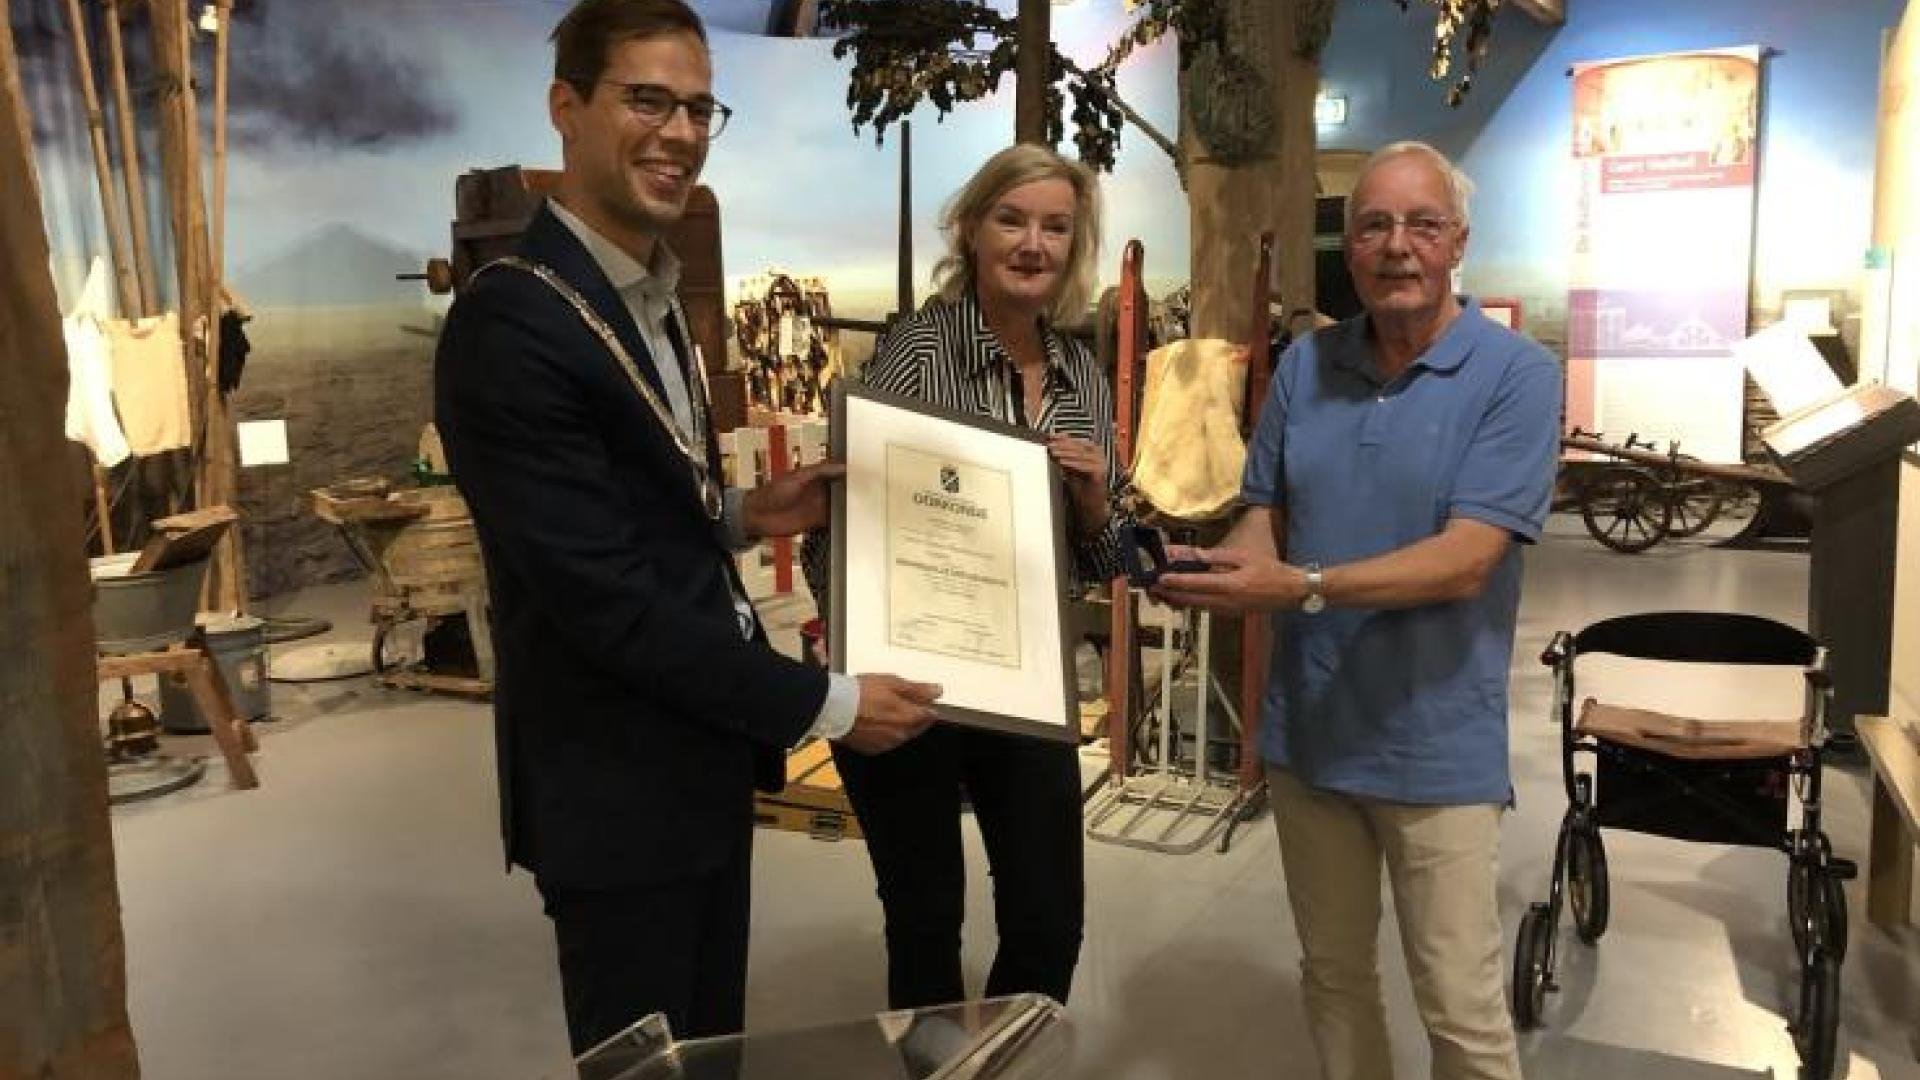 Elise van Melis, directeur van Haarlemmermeermuseum De Cruquius, en Henk van de Hoef, eindredacteur van Meer-Historie magazine ontvangen een eremedaille uit handen van locoburgemeester Jurgen Nobel.